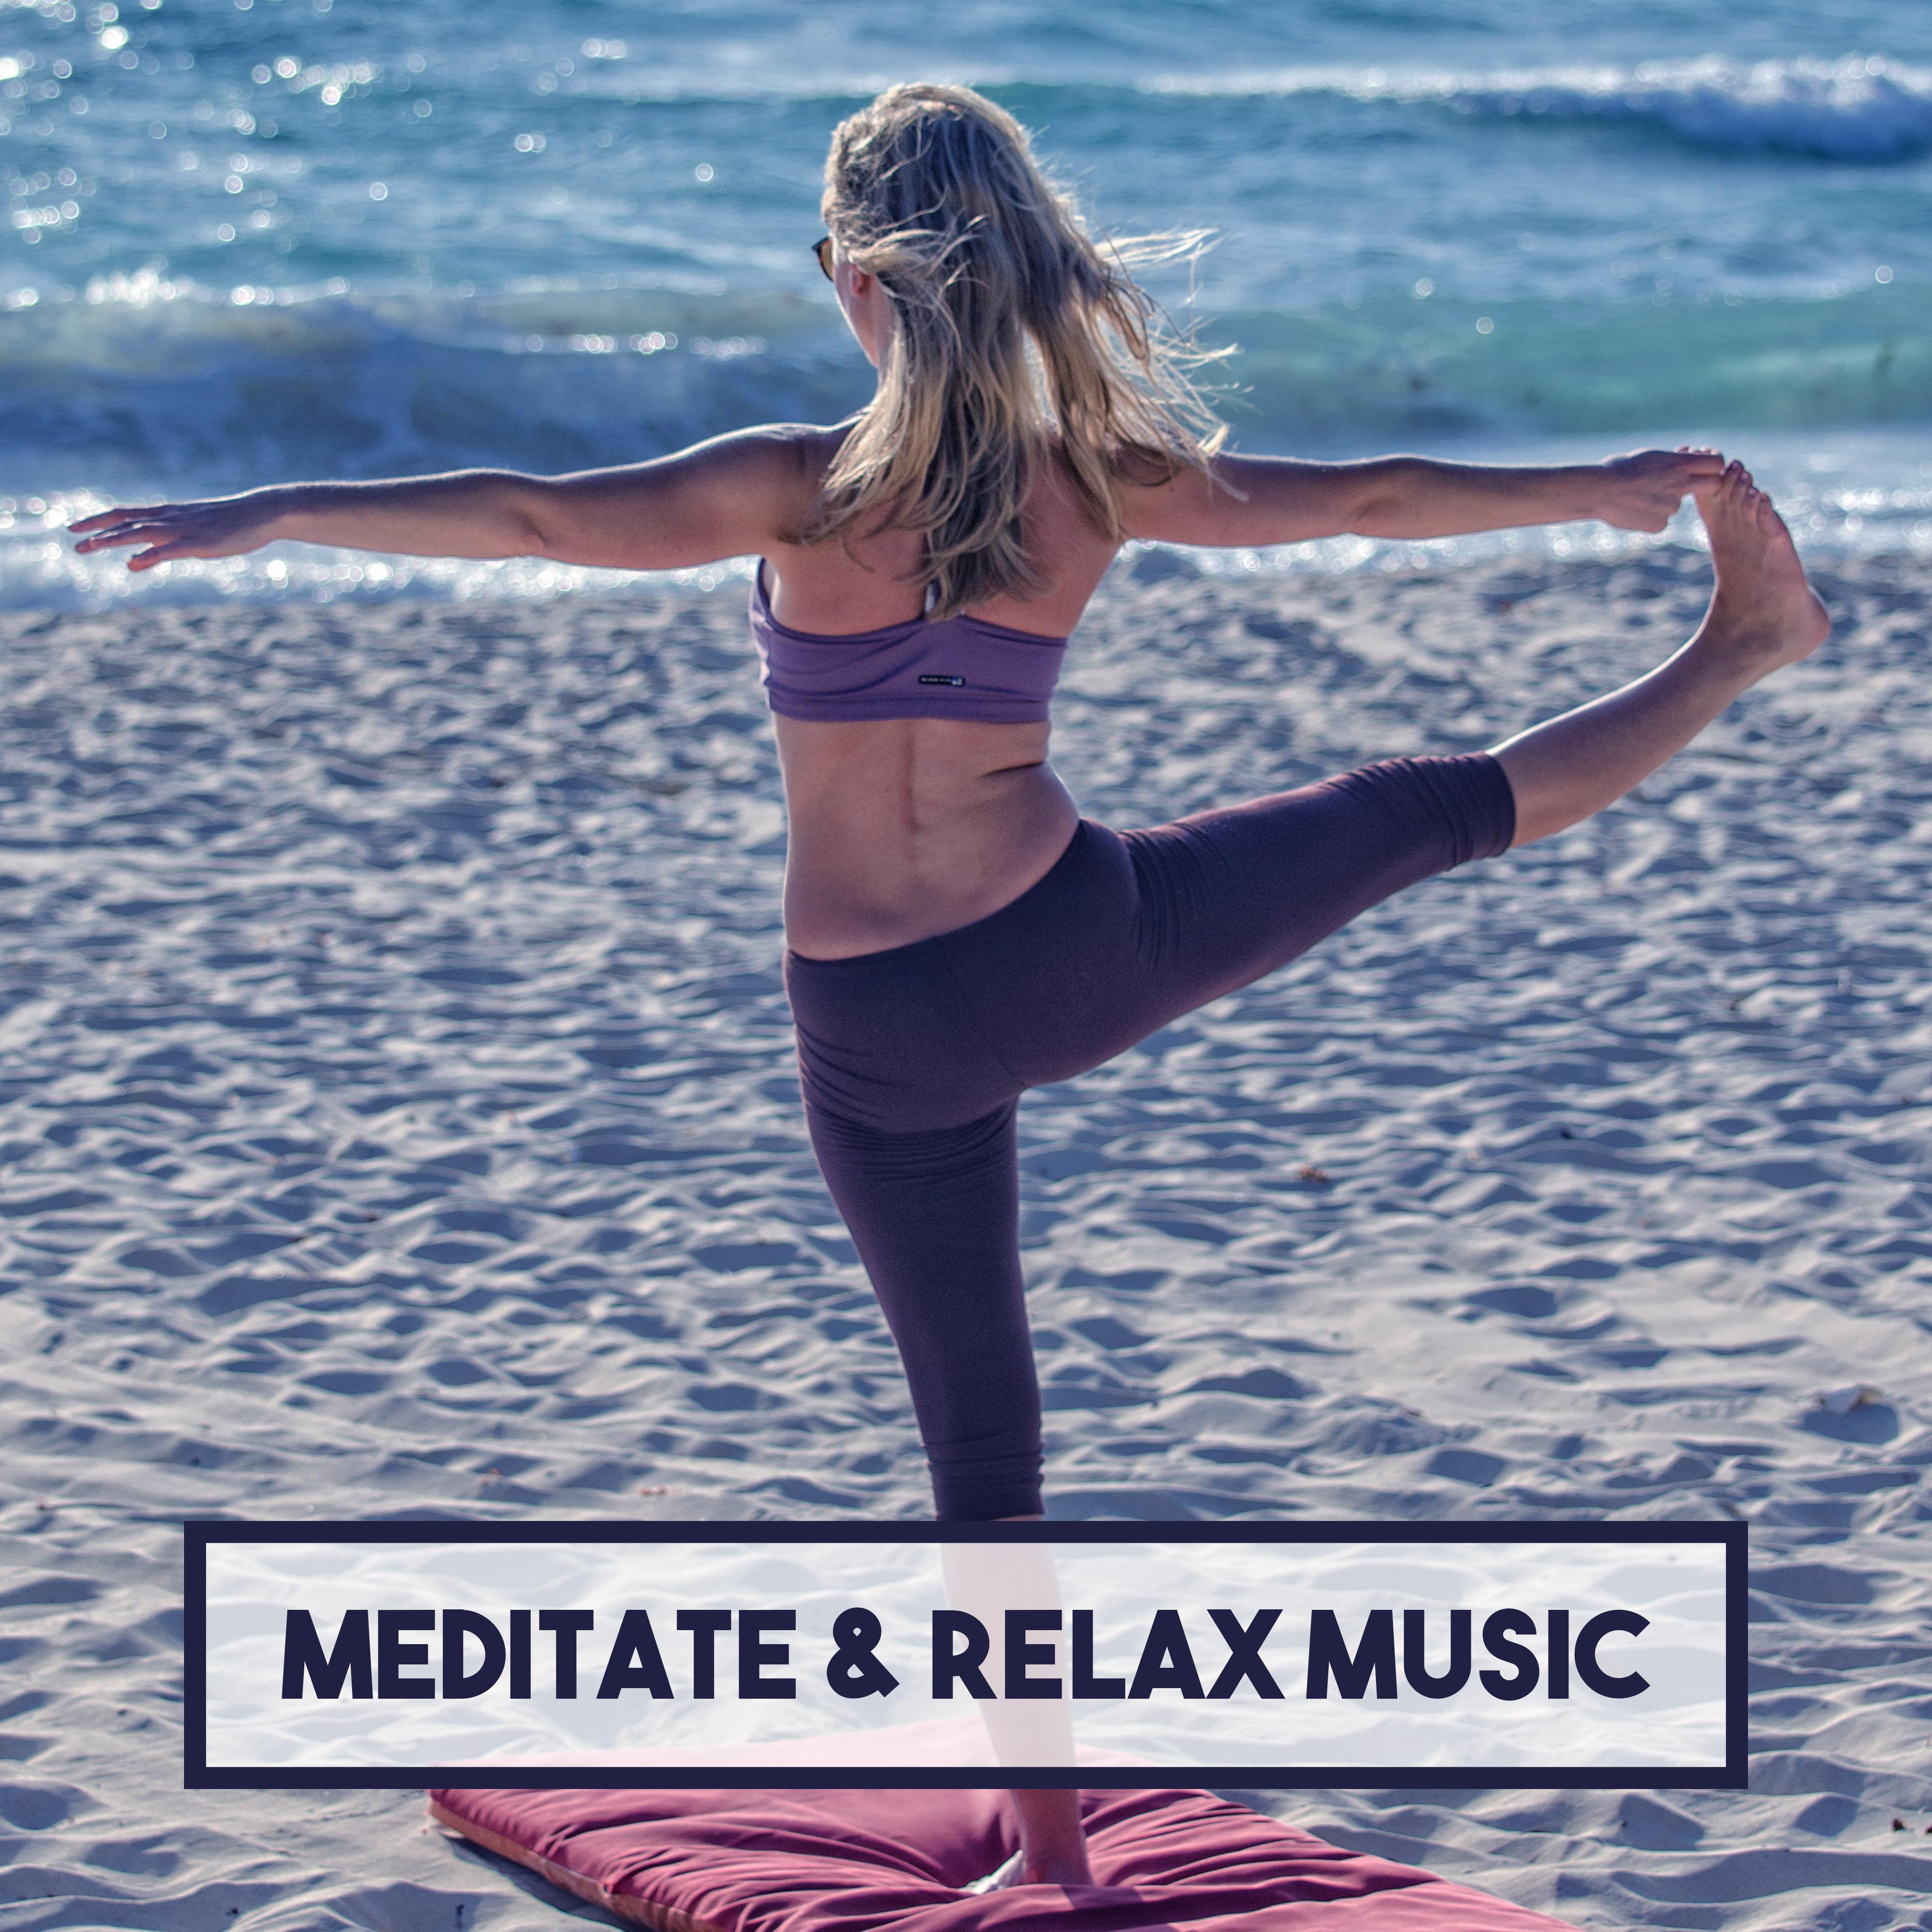 Meditate & Relax Music – Buddha Lounge, Inner Harmony, Spirit Free, Magical Journey